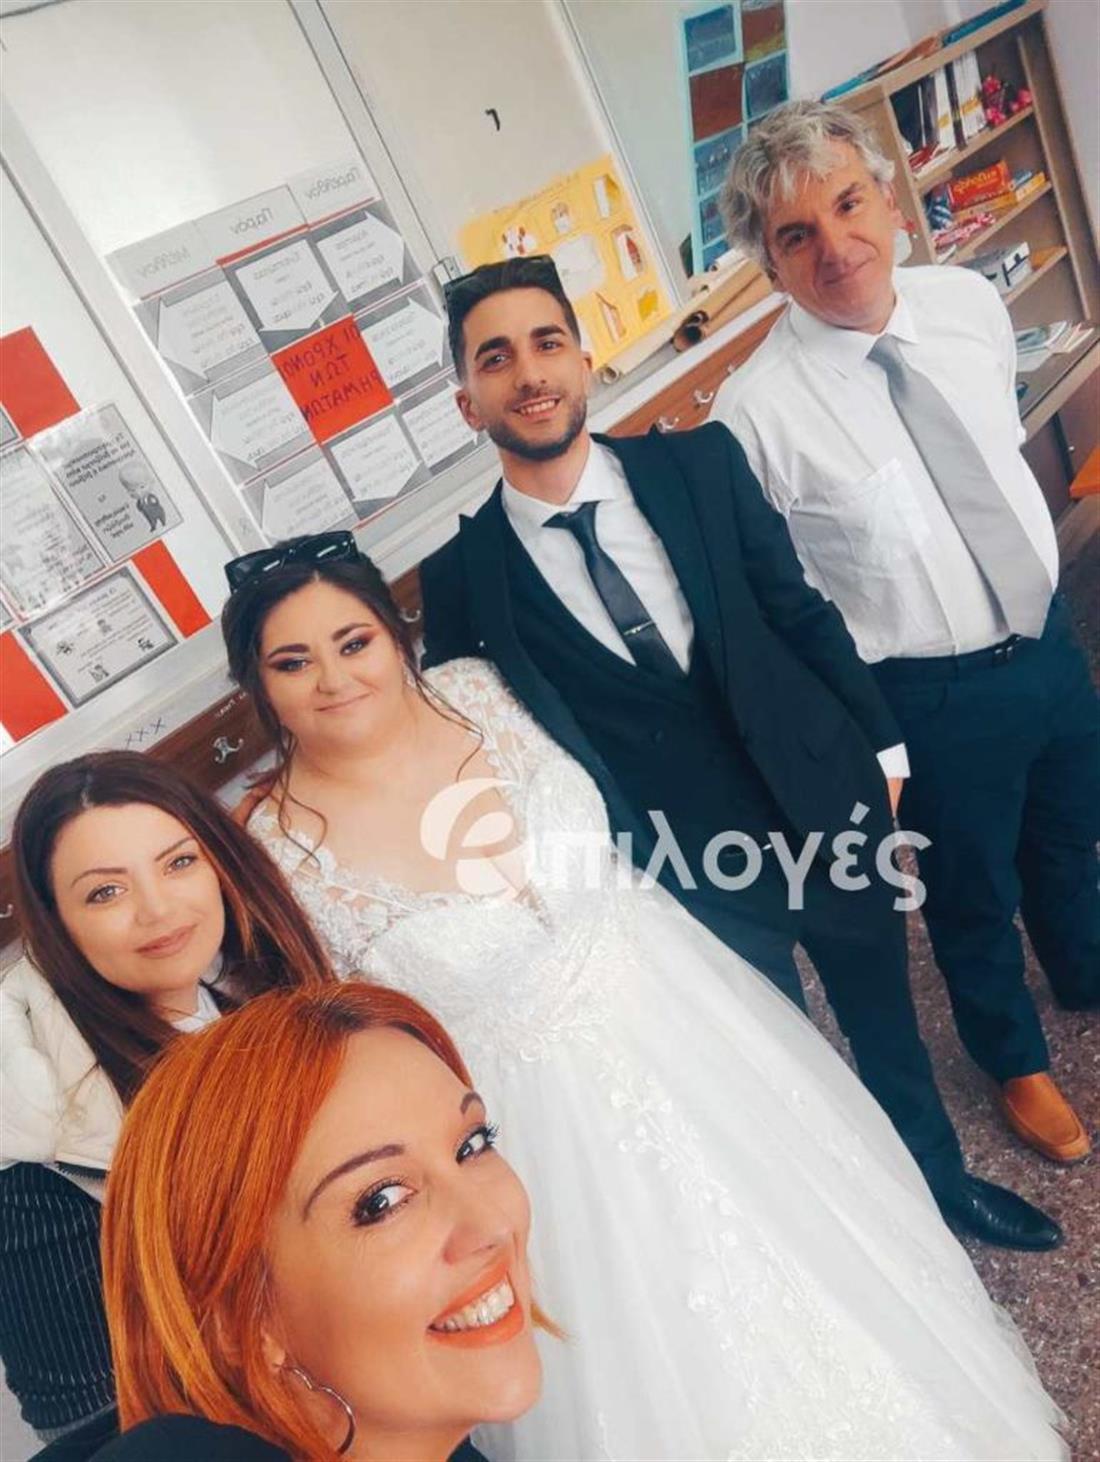 Σέρρες - εκλογές - νύφη και γαμπρός